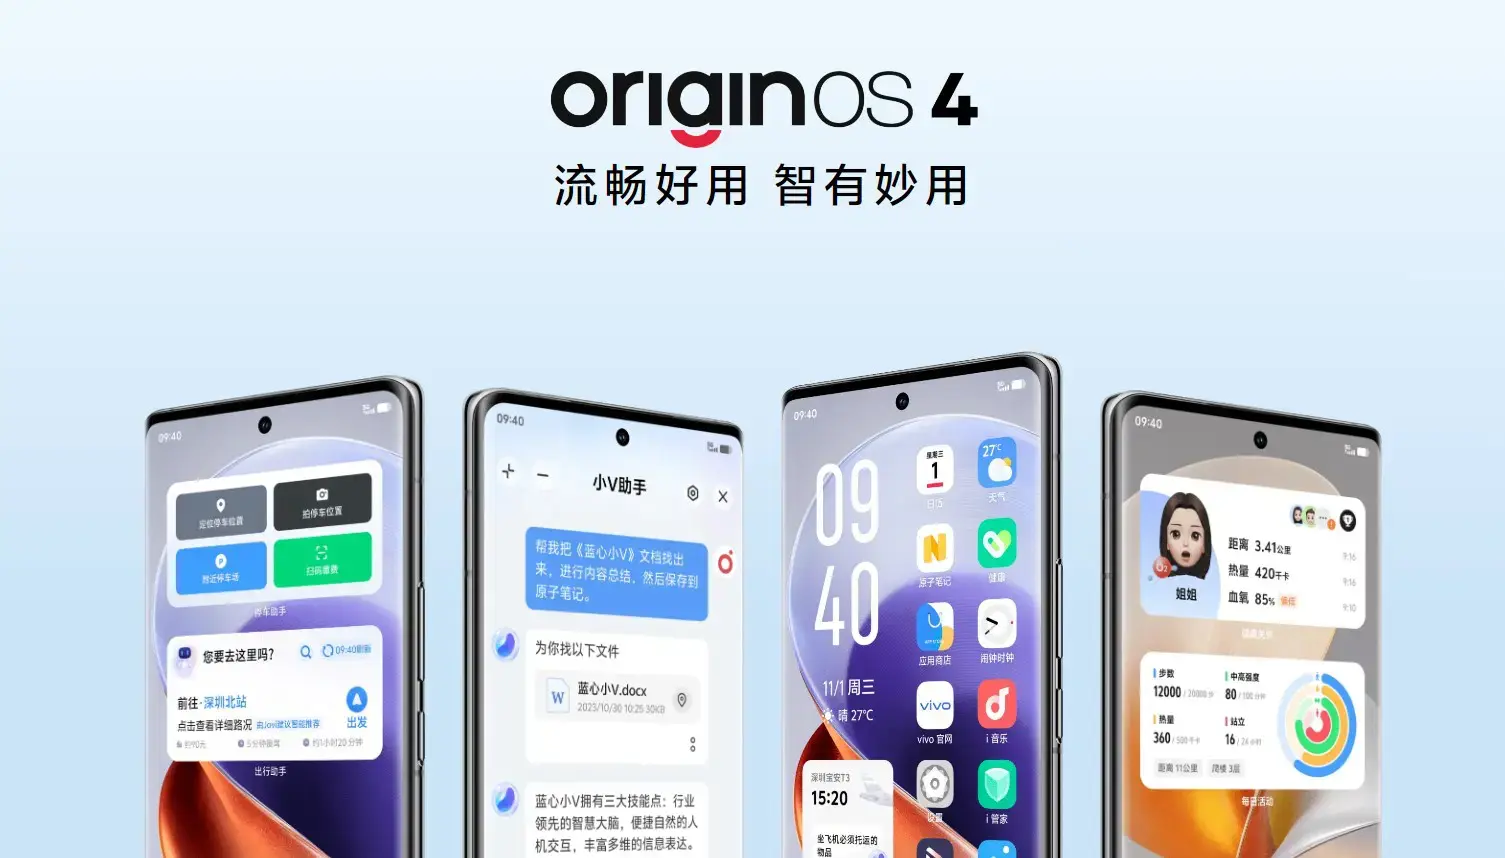 OriginOS 4 is de nieuwe firmware van vivo die het geheugen optimaliseert, het energieverbruik verlaagt en de uptime verbetert